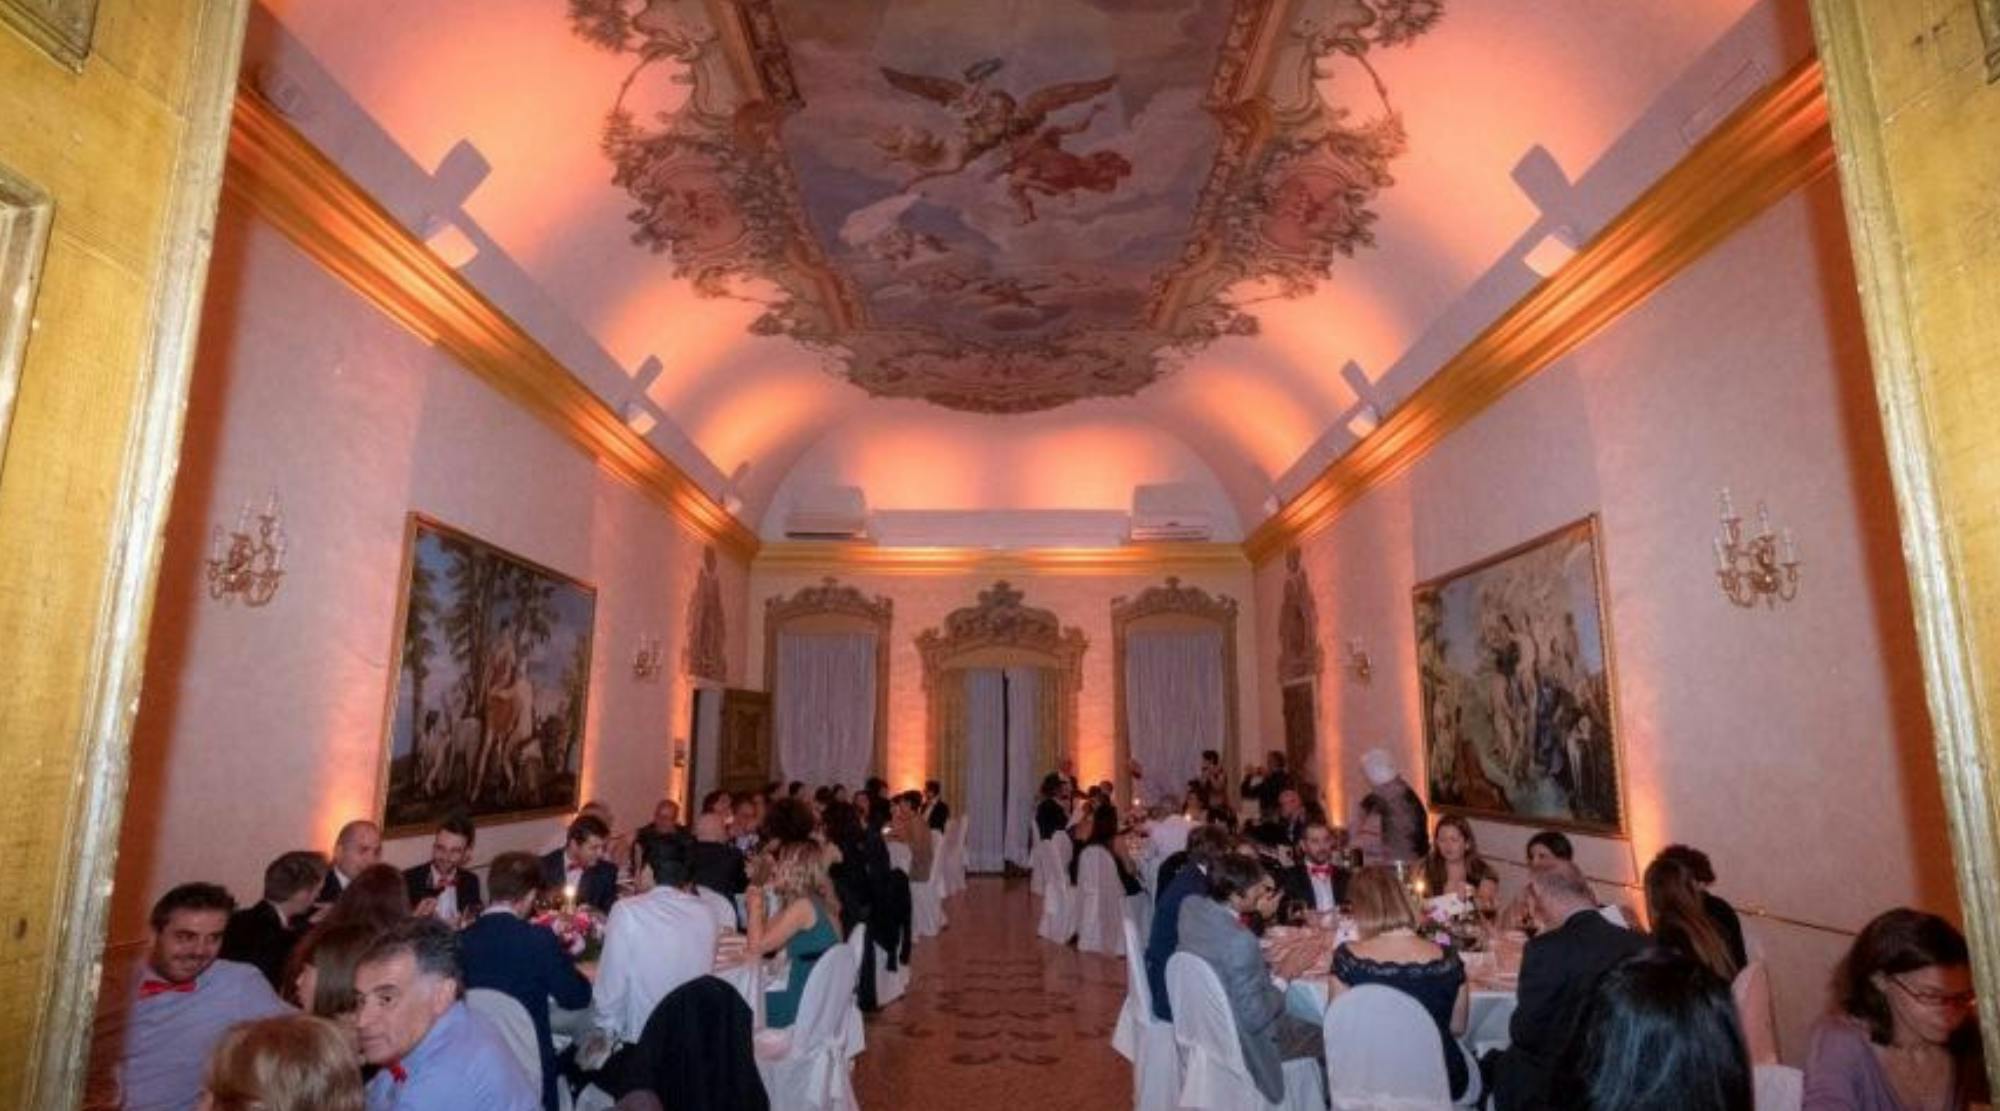 Cena di gala in sala elegante